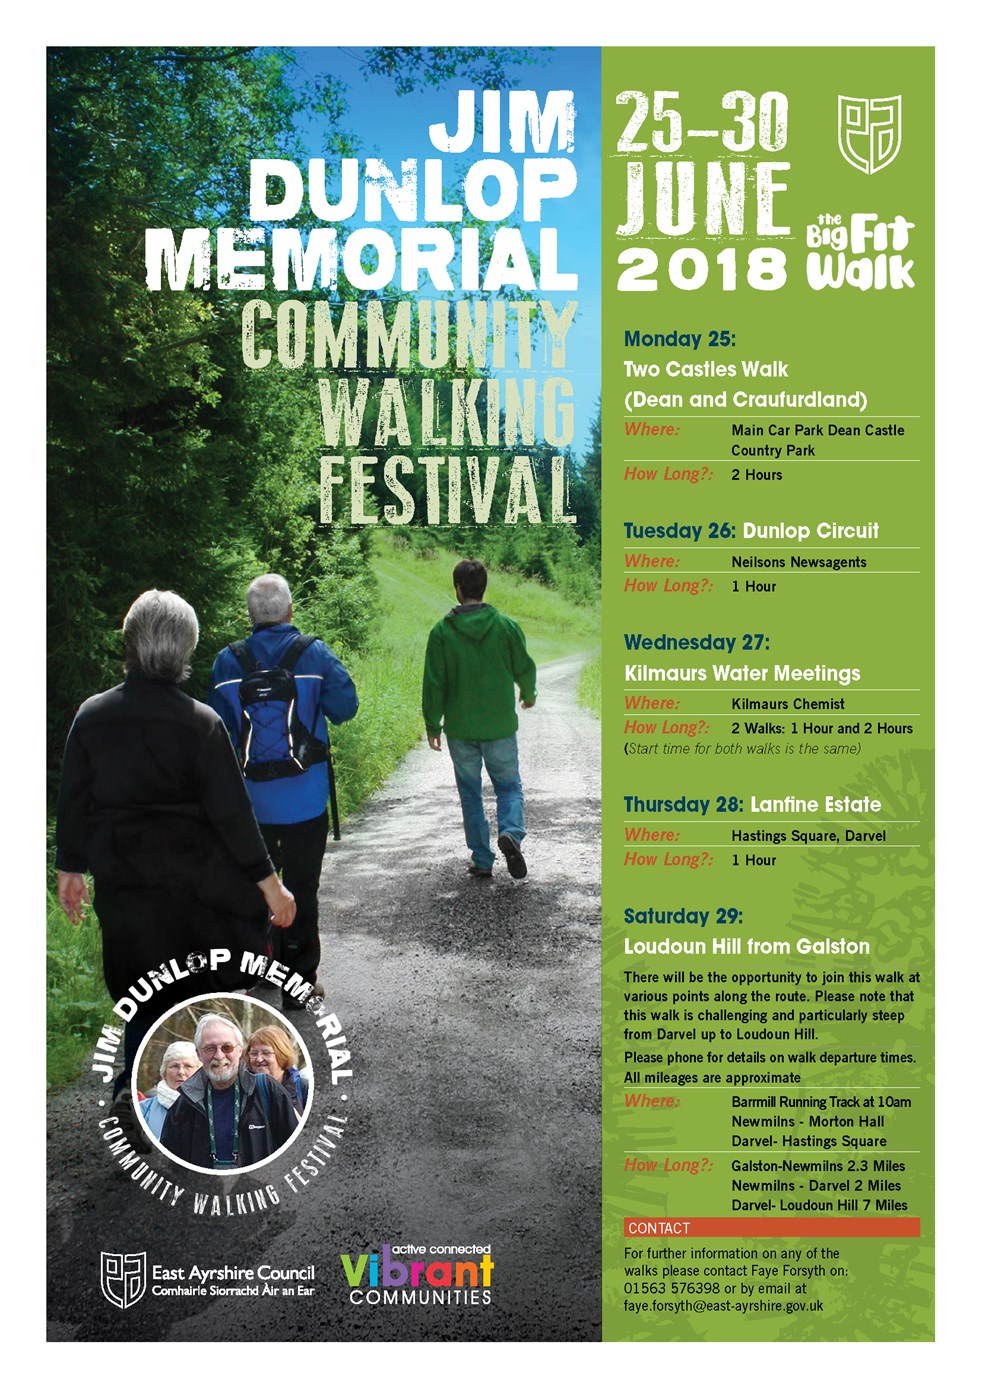 Jim Dunlop Memorial Community Walking Festival